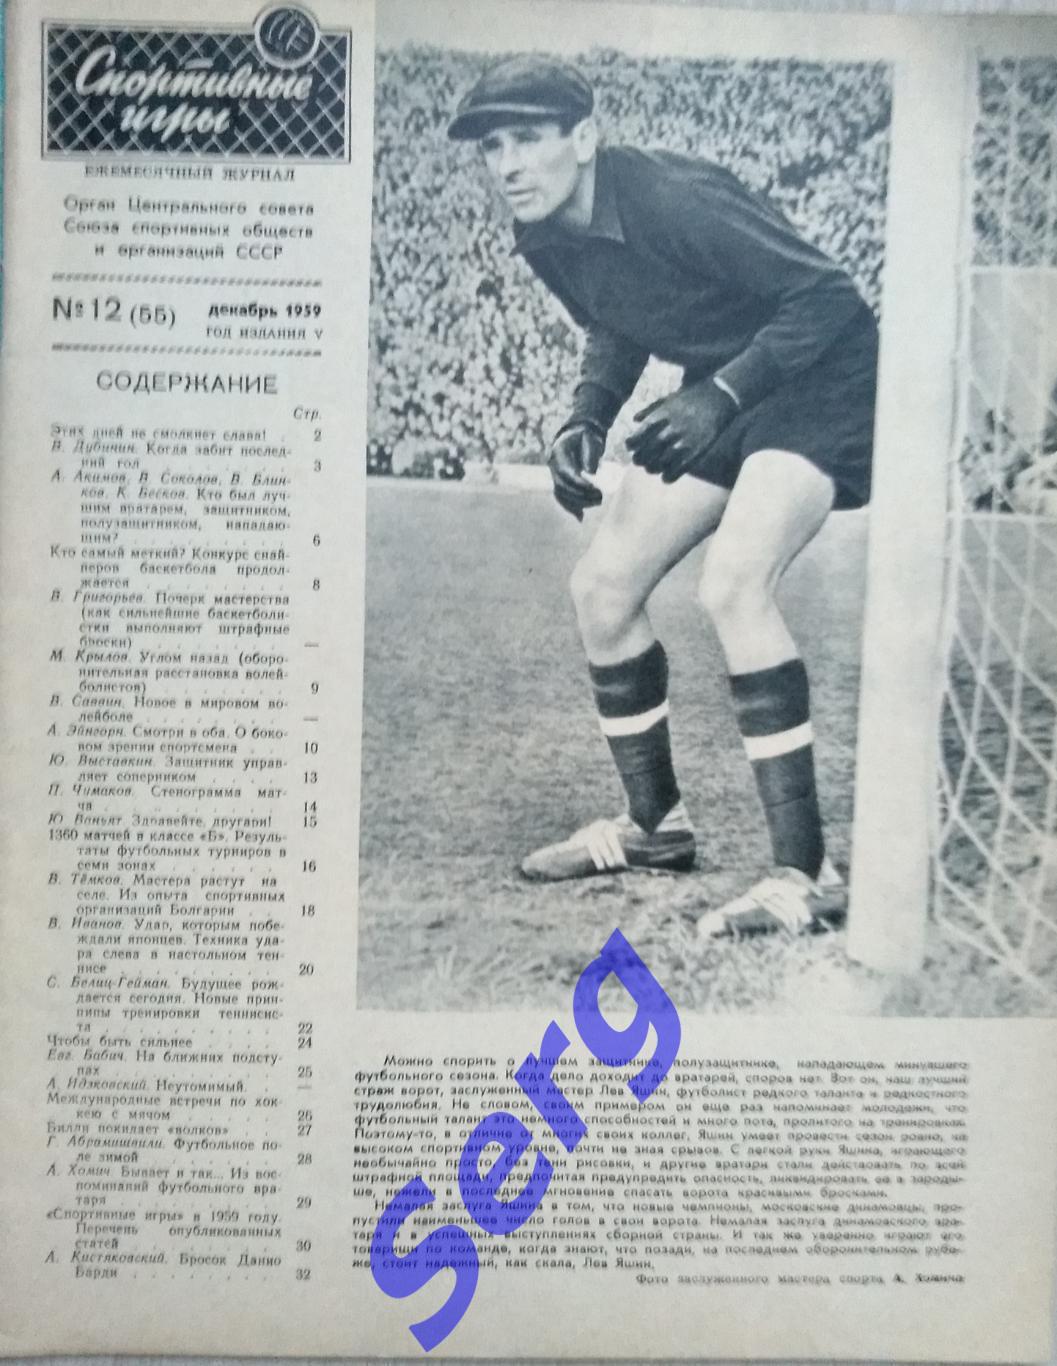 Журнал Спортивные игры №12 1959 год 1